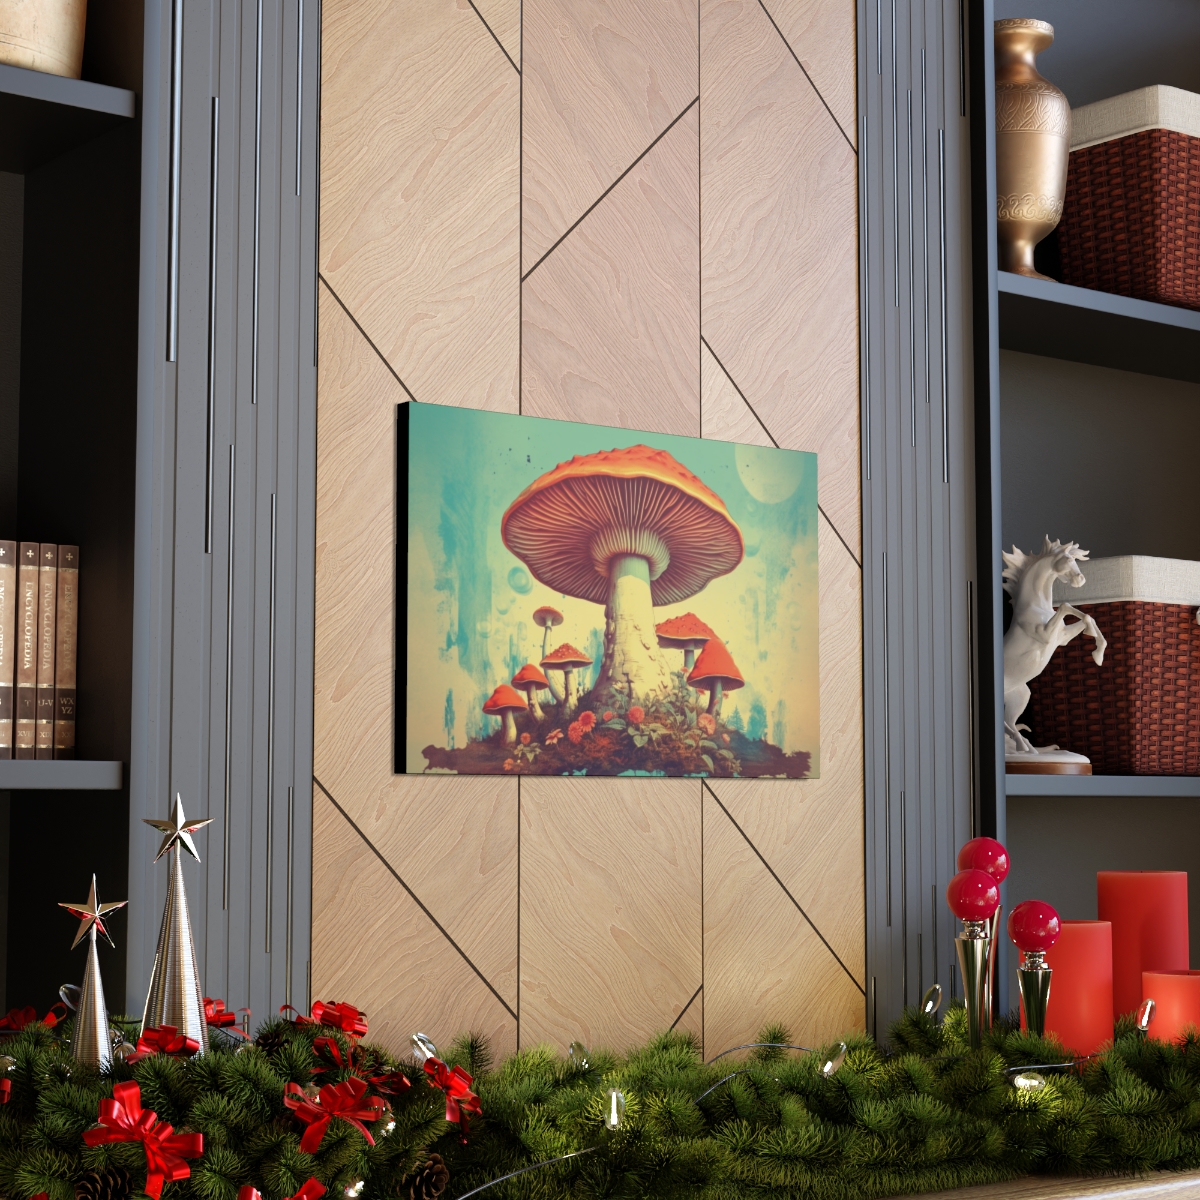 Mushroom Art Canvas Print: Fungi Of Pride